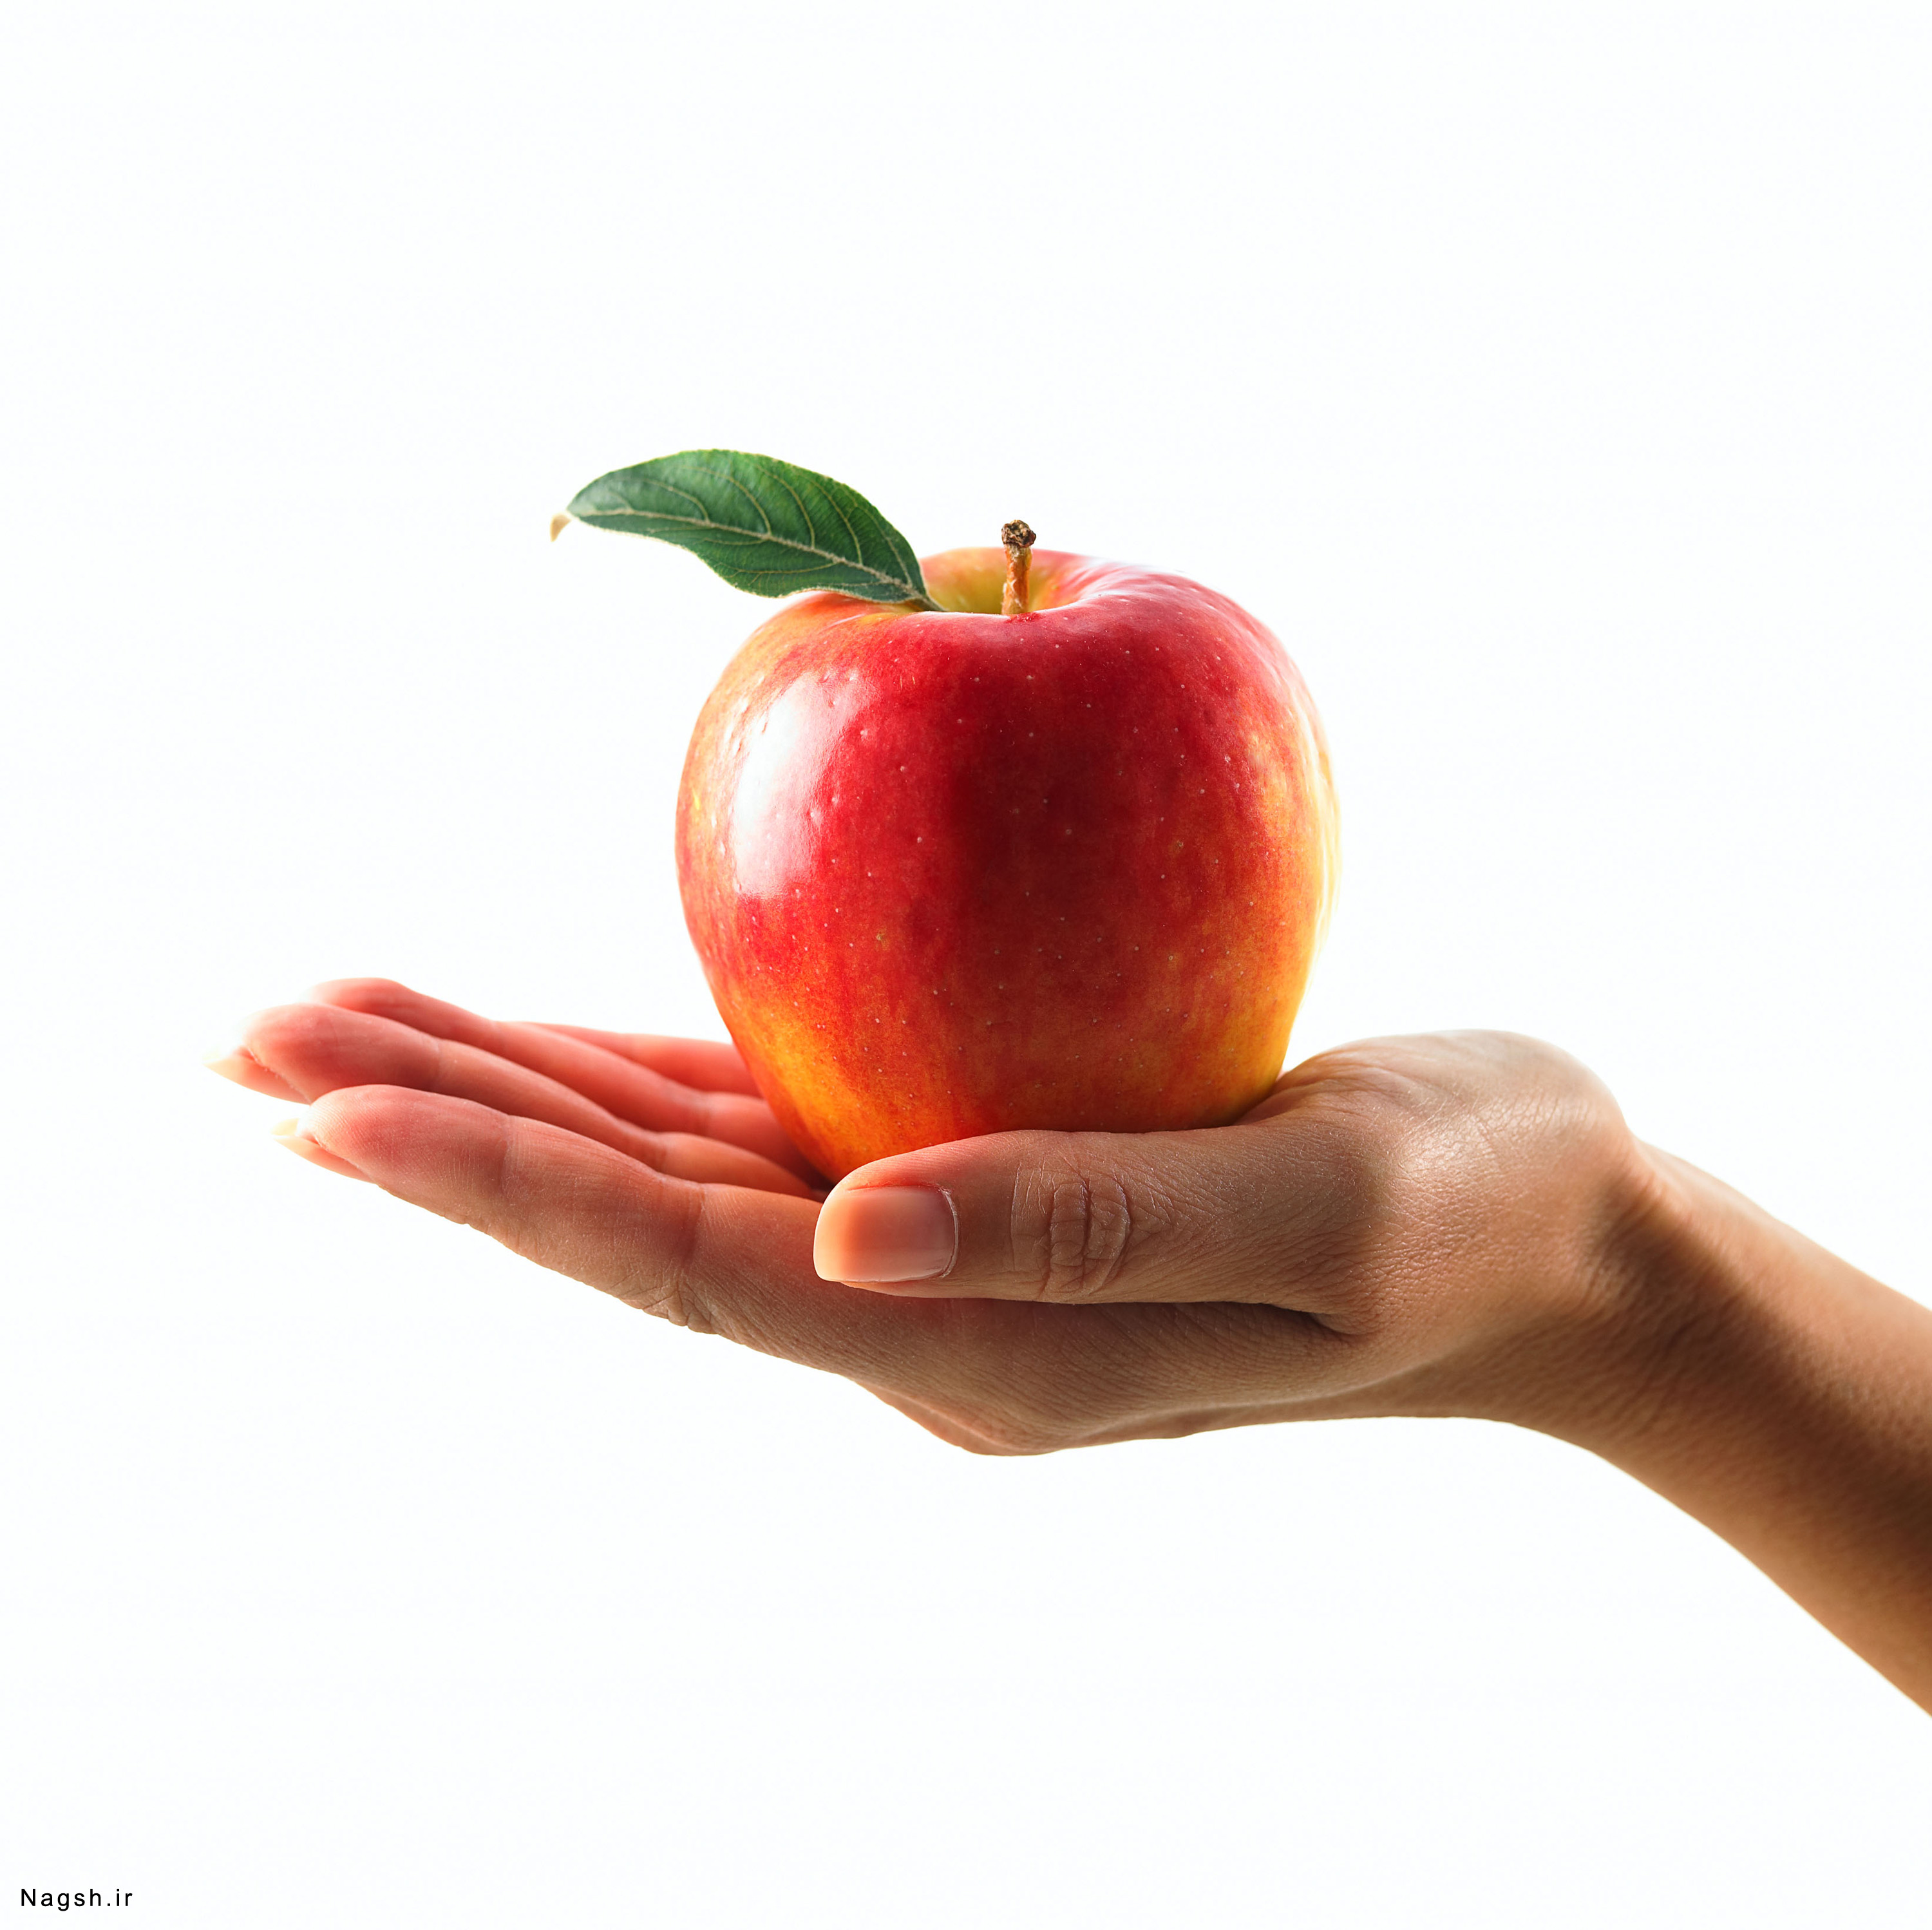 Нажмите на фрукт. Яблоко в руке. Рука держит яблоко. Предмет в руке. Предмет на ладони.